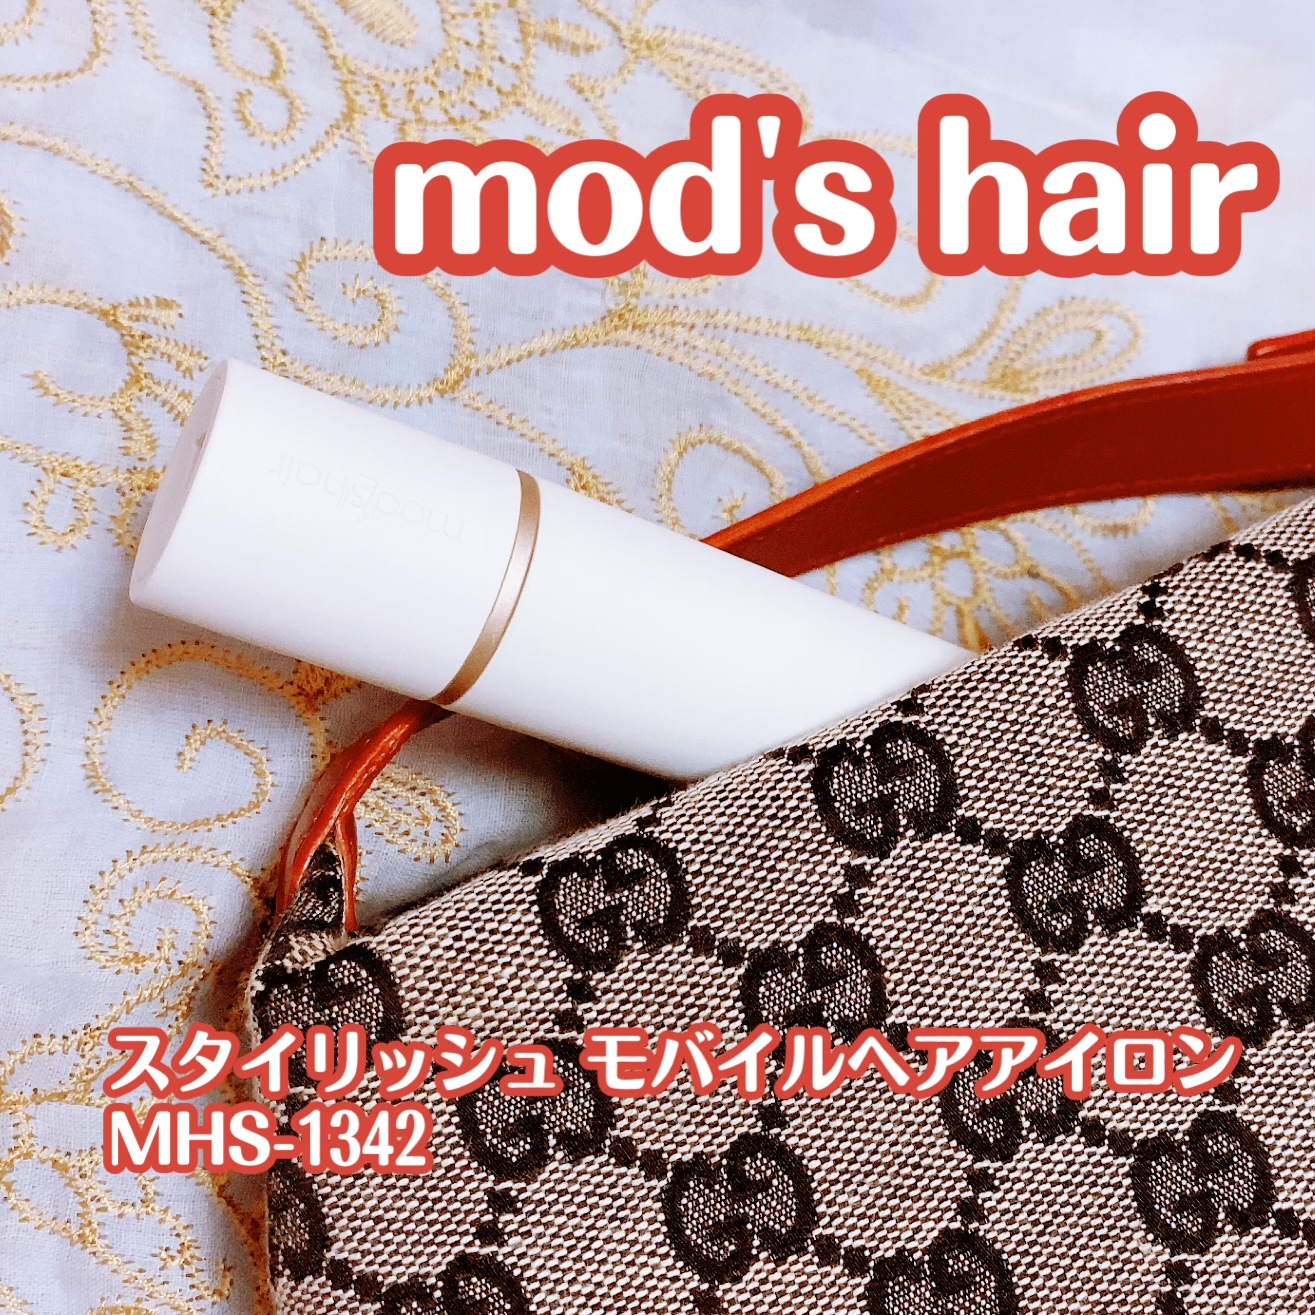 mod’s hair(モッズ・ヘア) スタイリッシュ モバイルヘアアイロン MHS-1342の良い点・メリットに関する珈琲豆♡さんの口コミ画像1